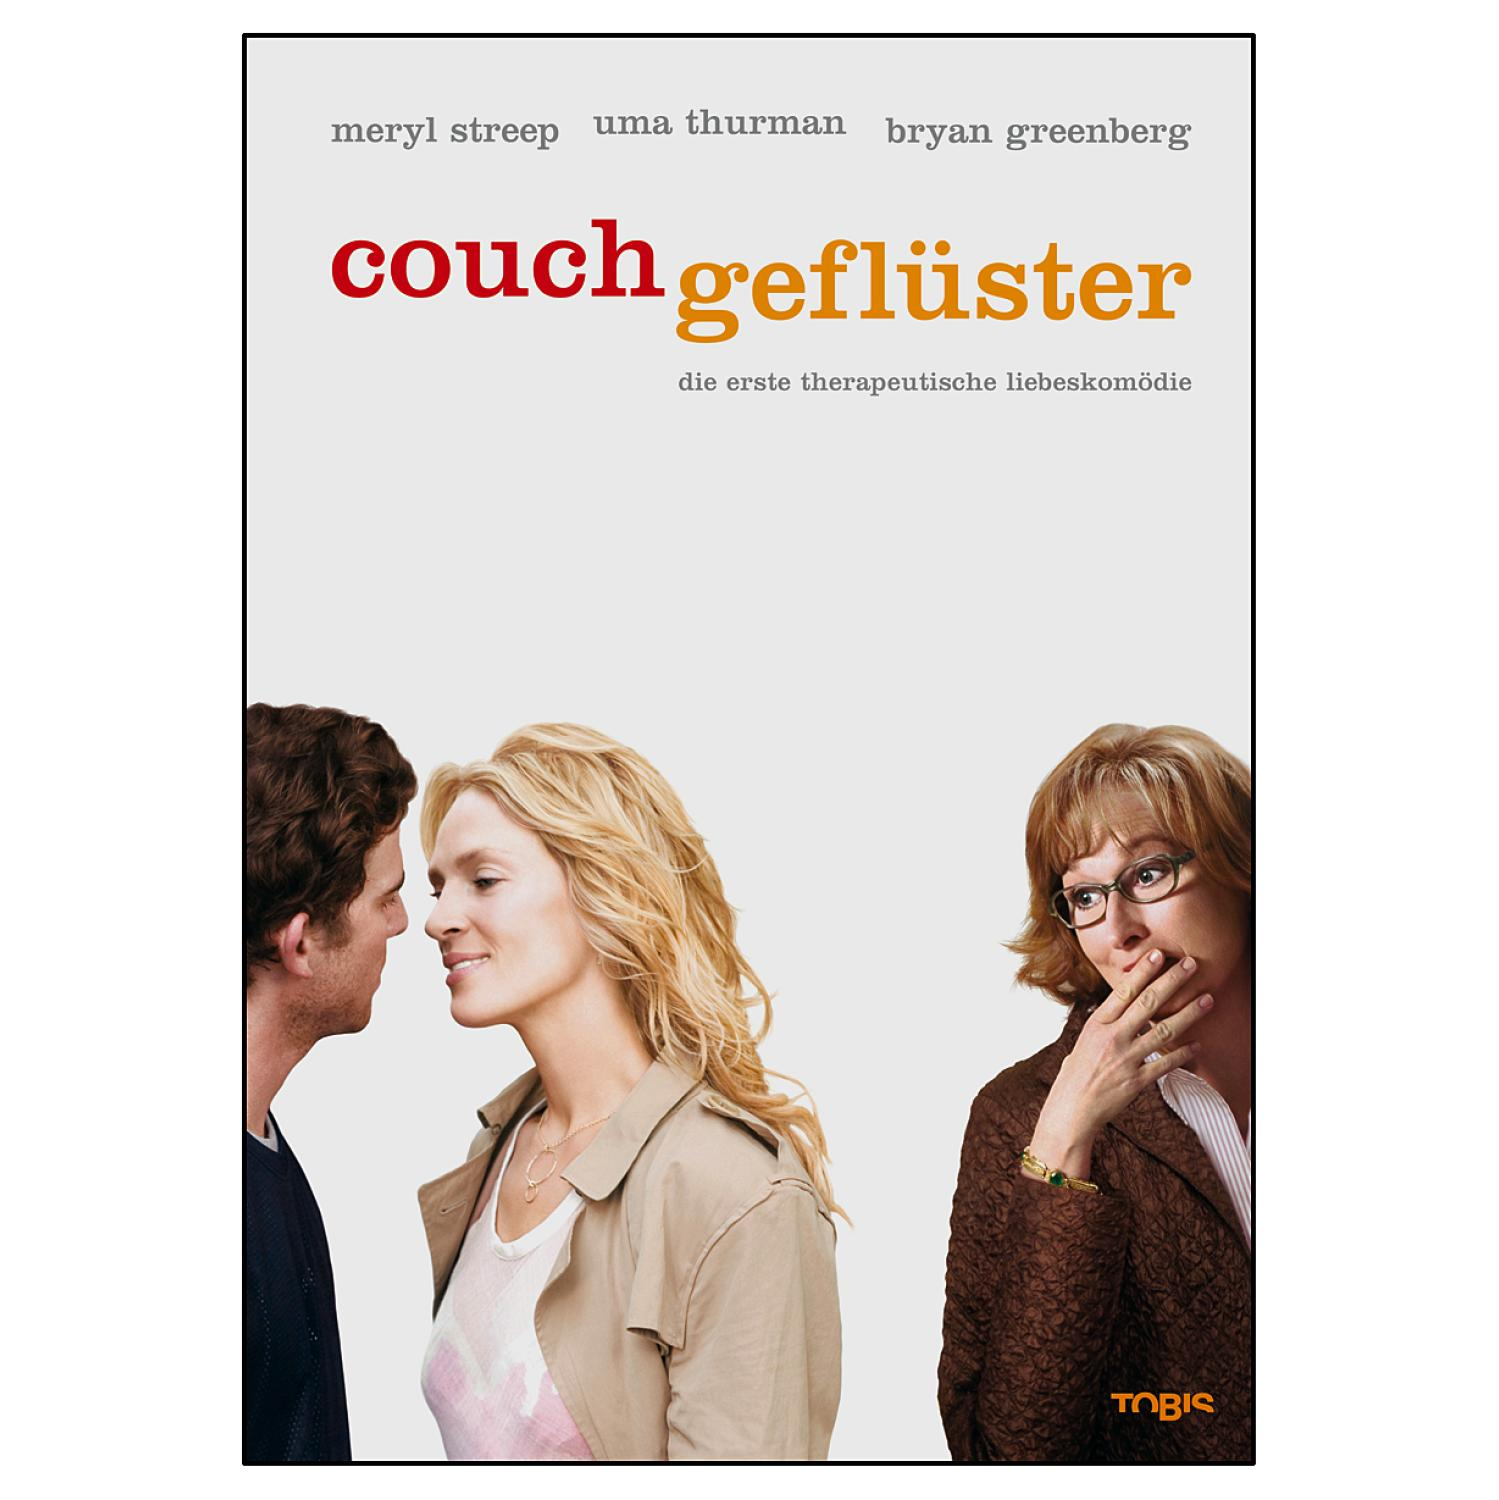 Die Couchgeflüster erste Liebeskomödie DVD - therapeutische